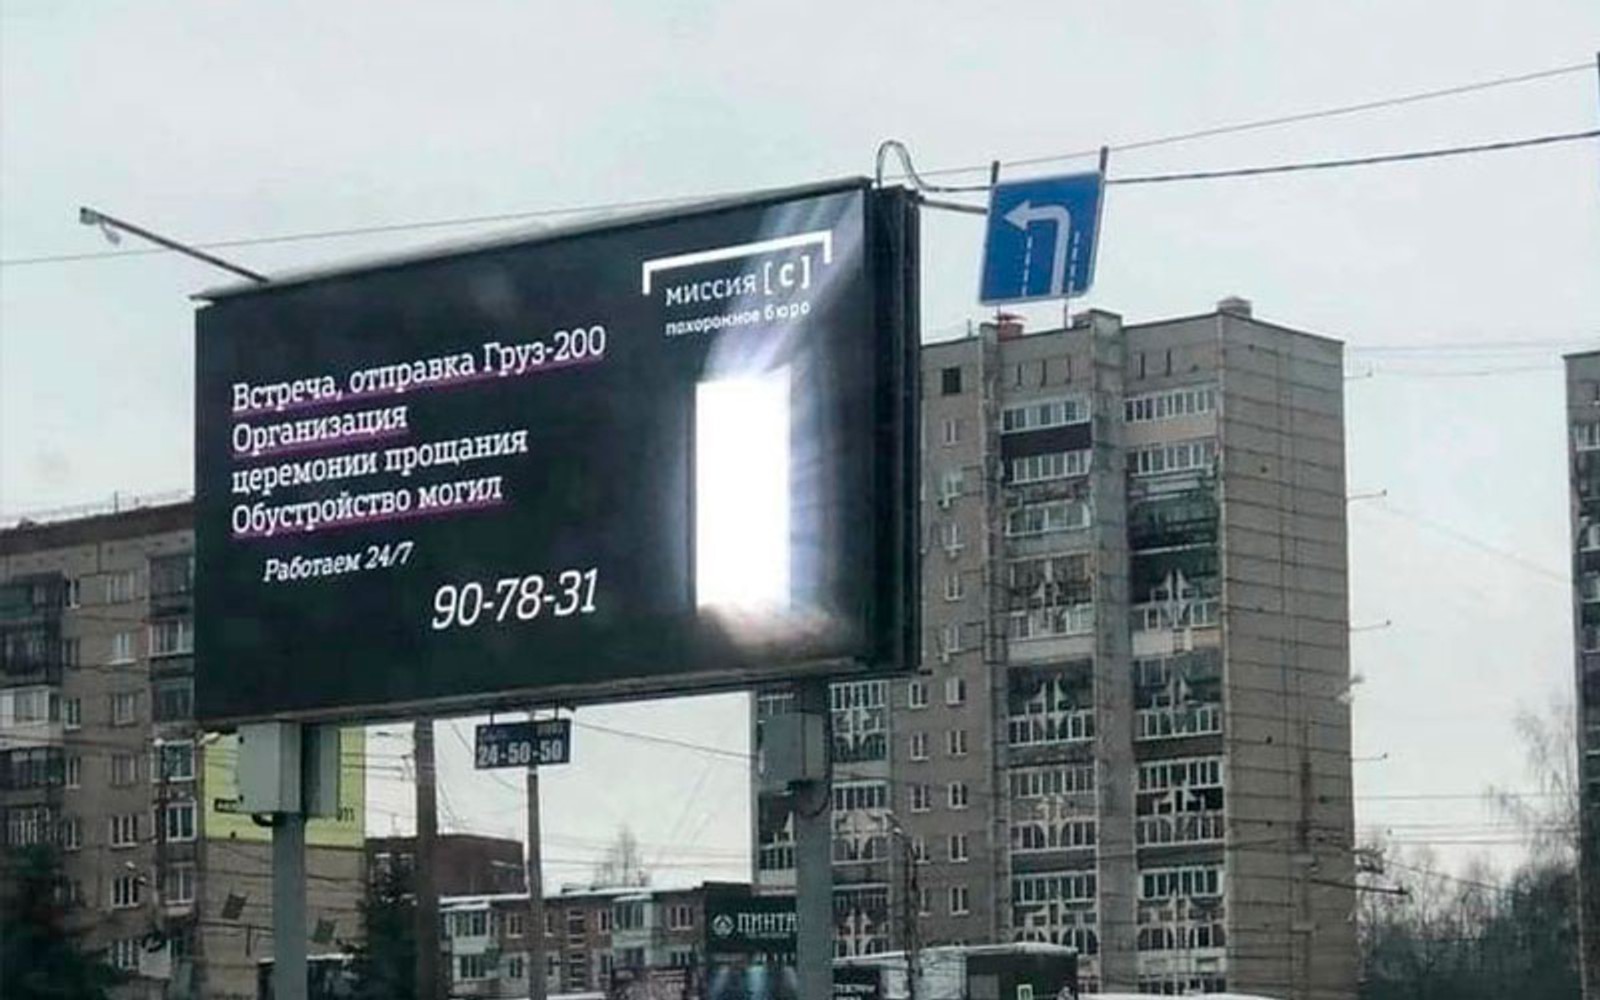 Груз 200 русские в украине телеграмм фото 81